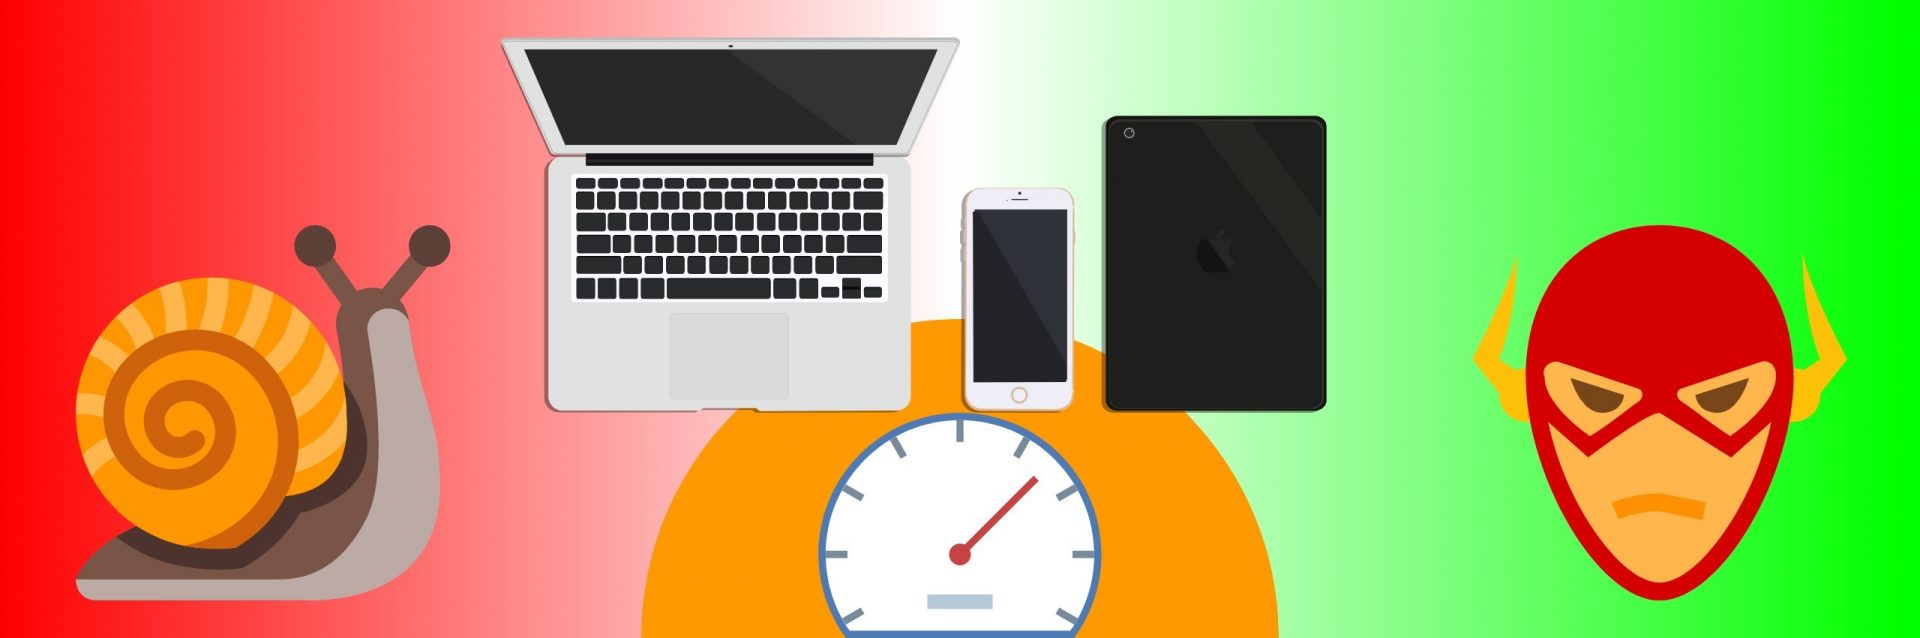 Por que com o passar do tempo os dispositivos ficam mais lentos? 3